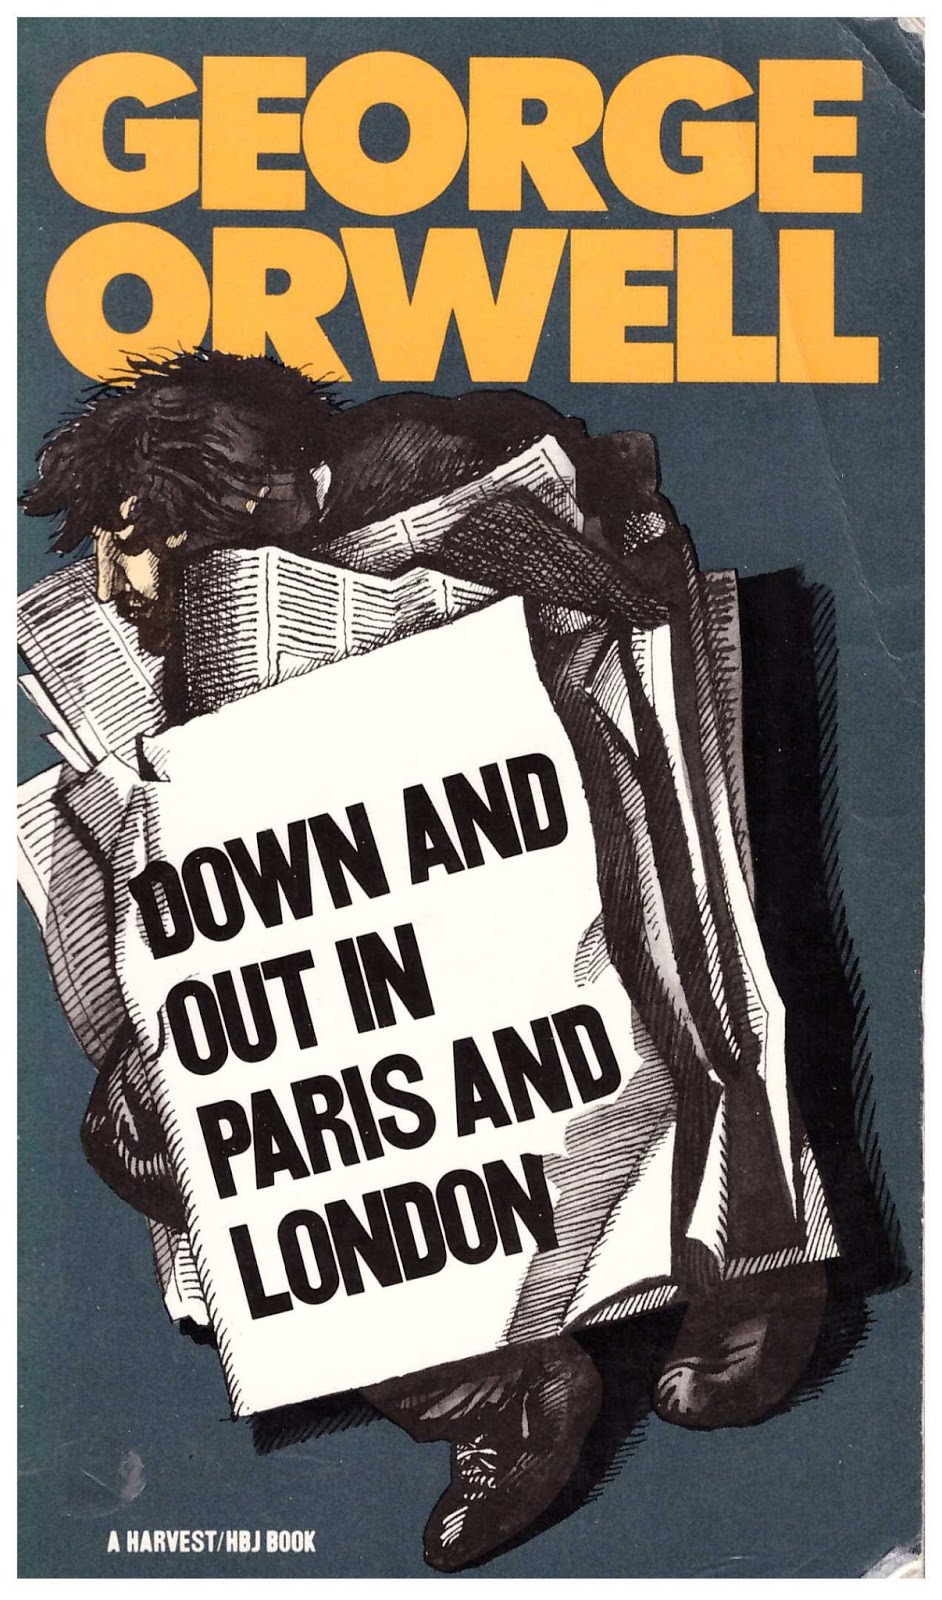 Фунты лиха в париже и лондоне. Фунты лиха в Париже и Лондоне Джордж Оруэлл книга. Фунты лиха в Париже и Лондоне книга. Оруэлл фунты лиха в Париже. George Orwell.